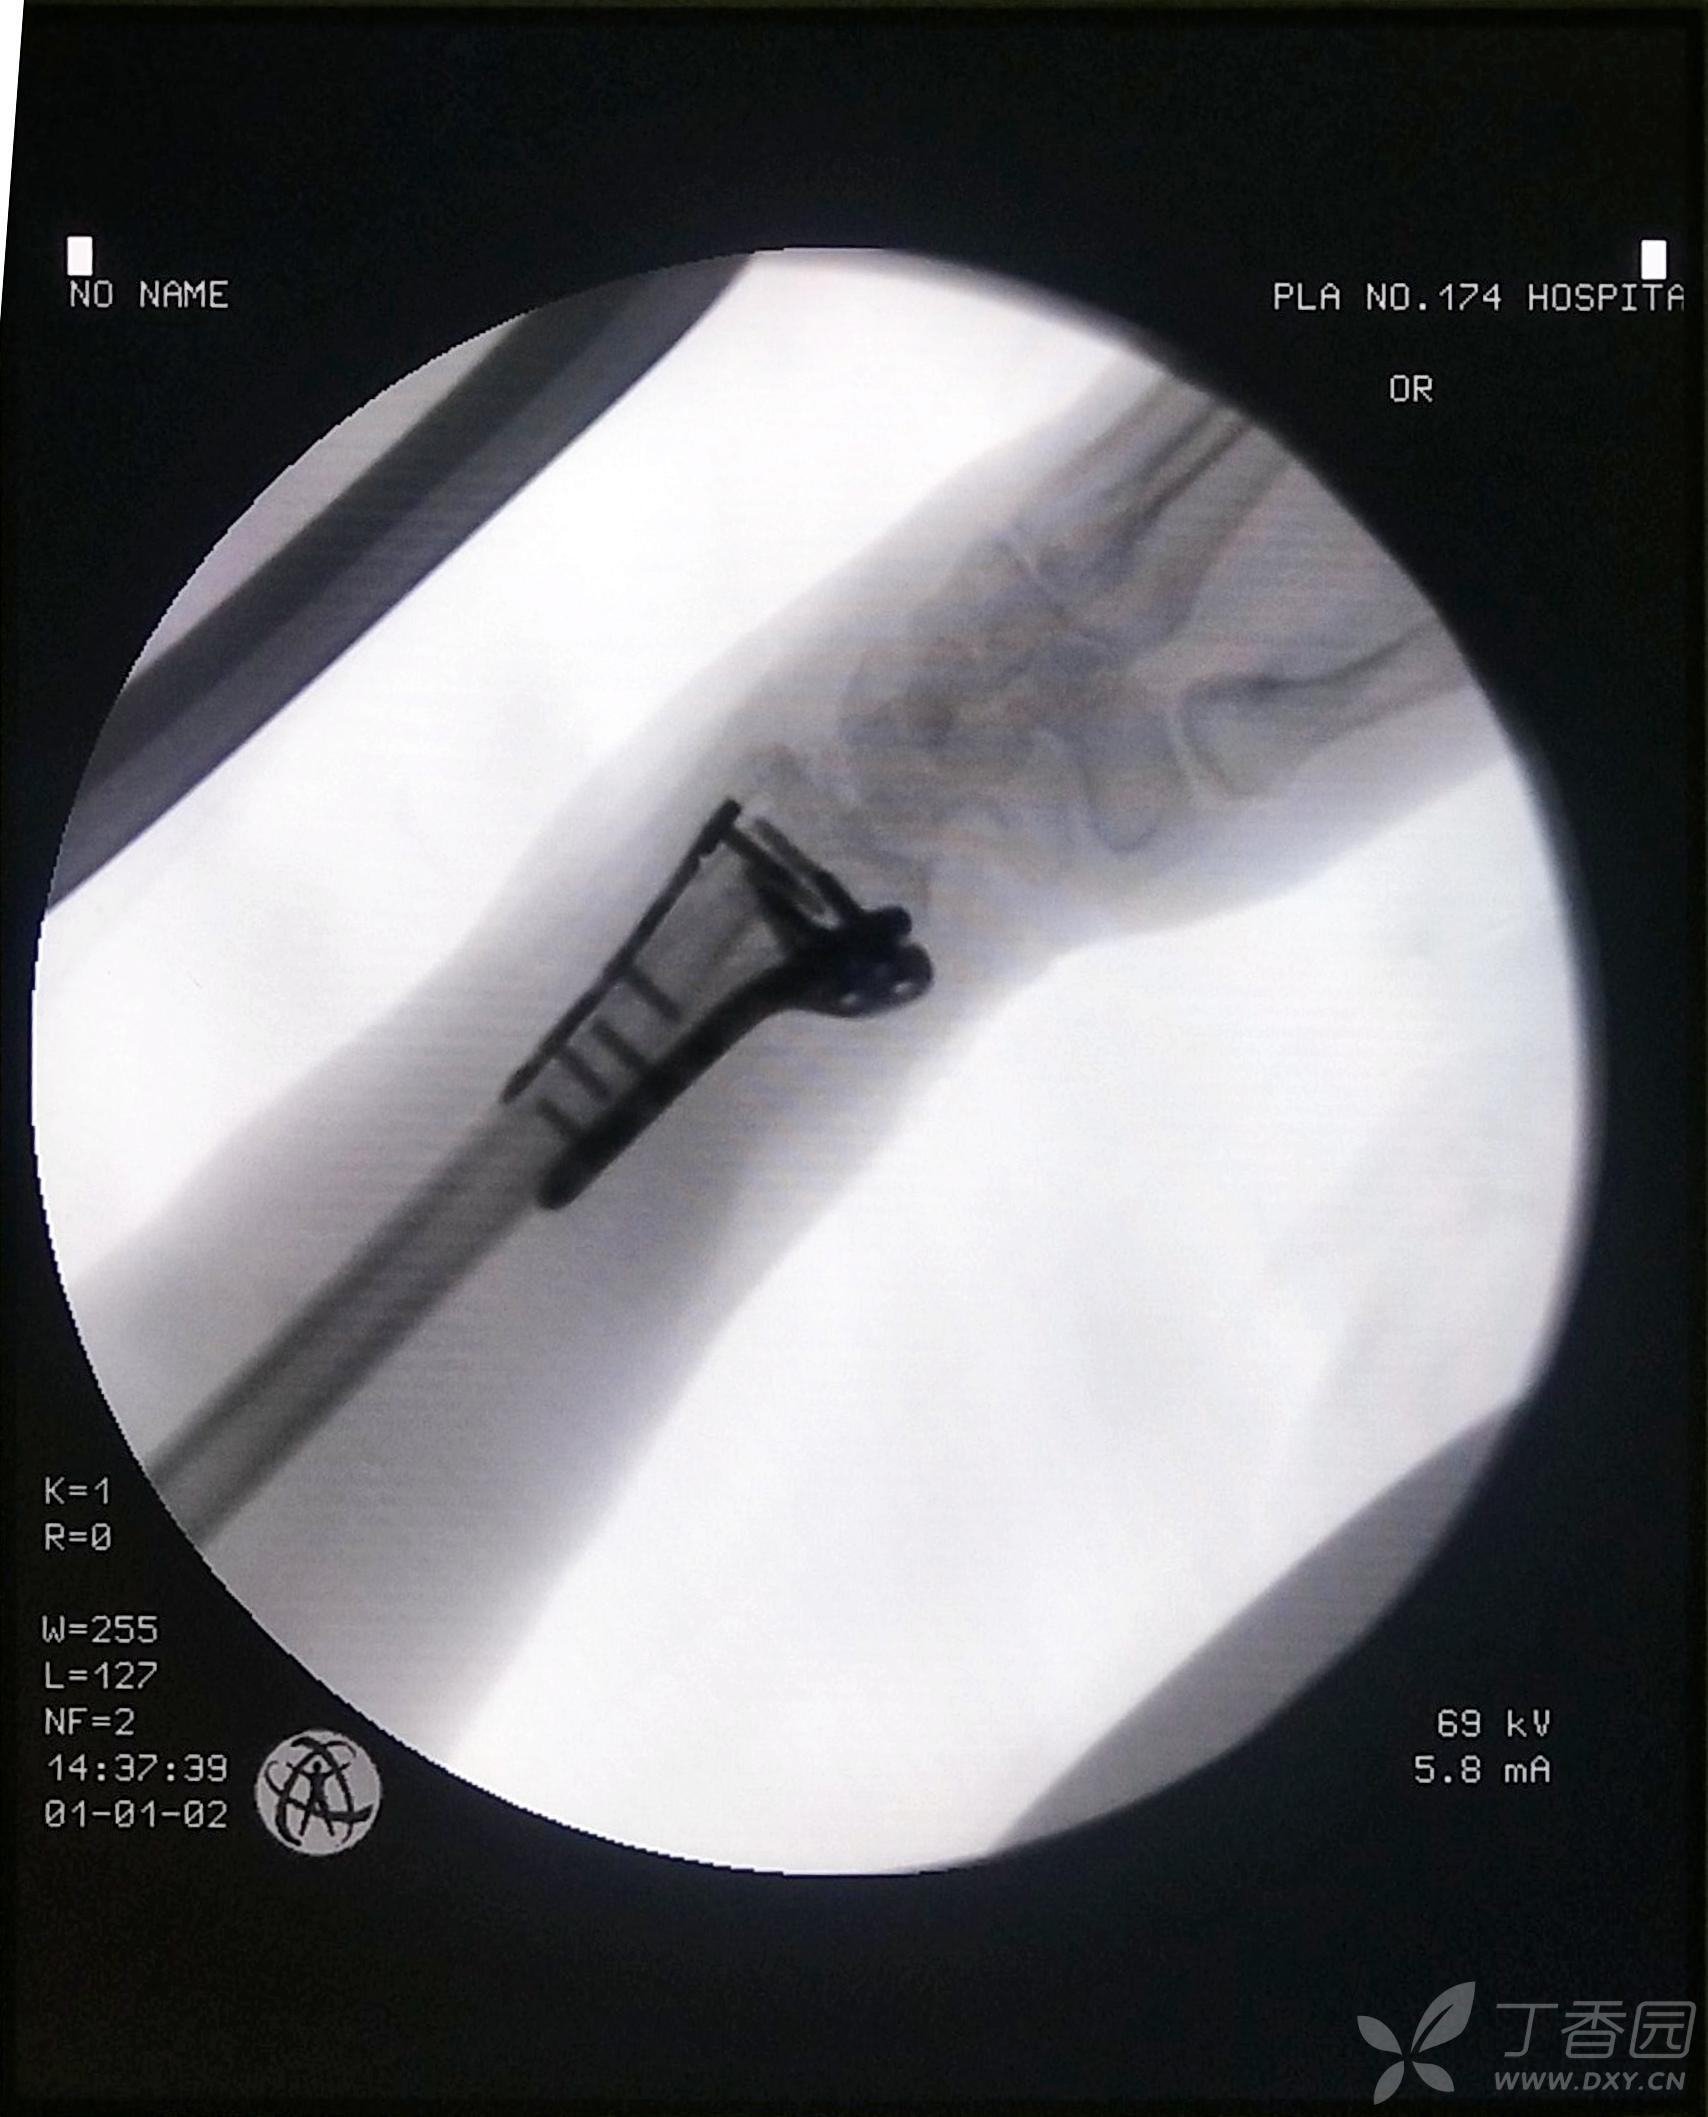 黄骨头桡骨远端骨折手术日记1——桡骨远端粉碎性骨折掌背侧联合入路